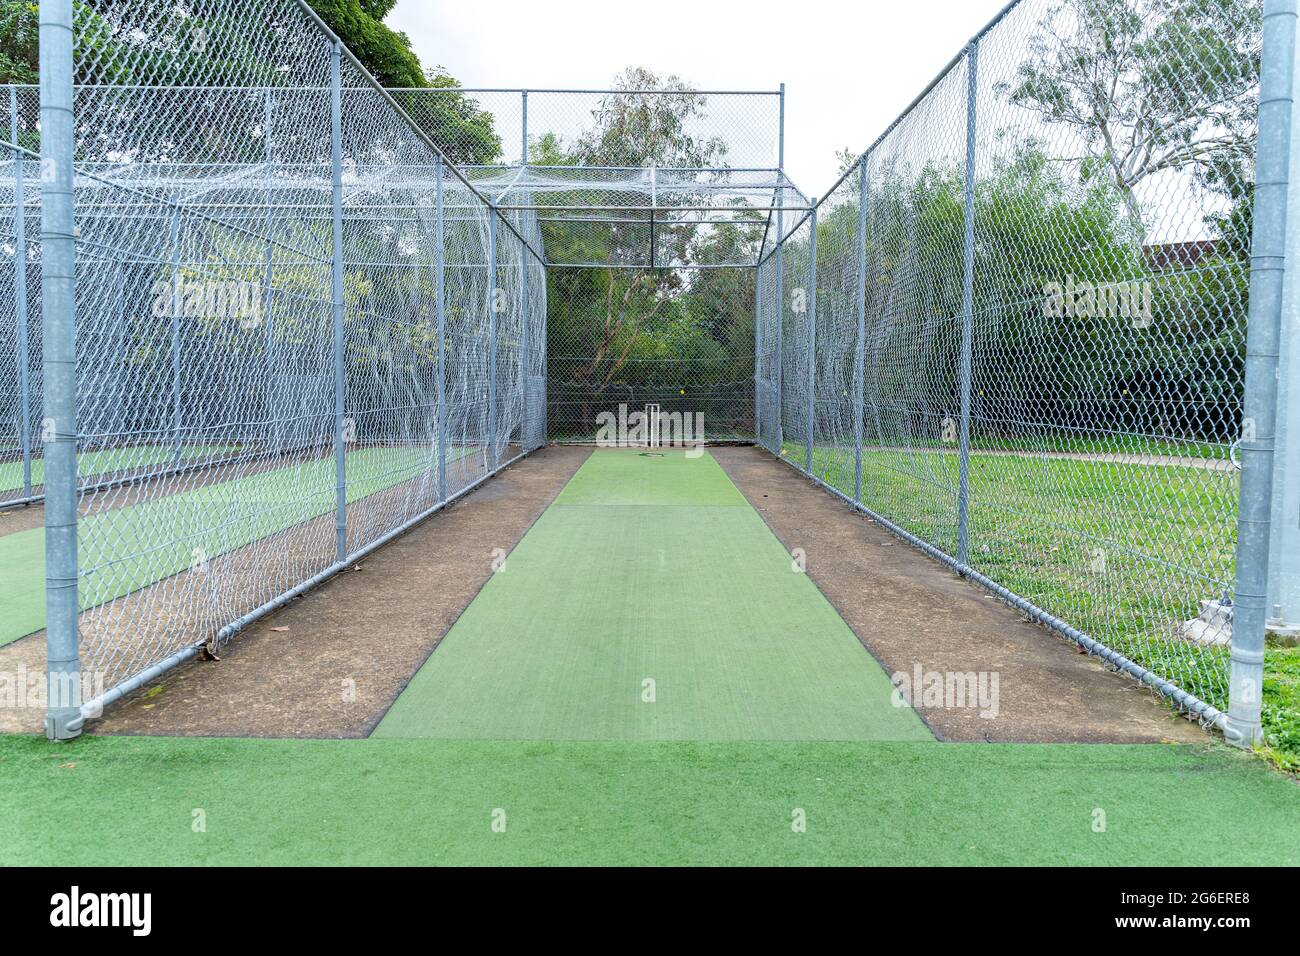 Terrain de cricket sous les filets.Infrastructure sportive au terrain de jeu en Australie. Banque D'Images